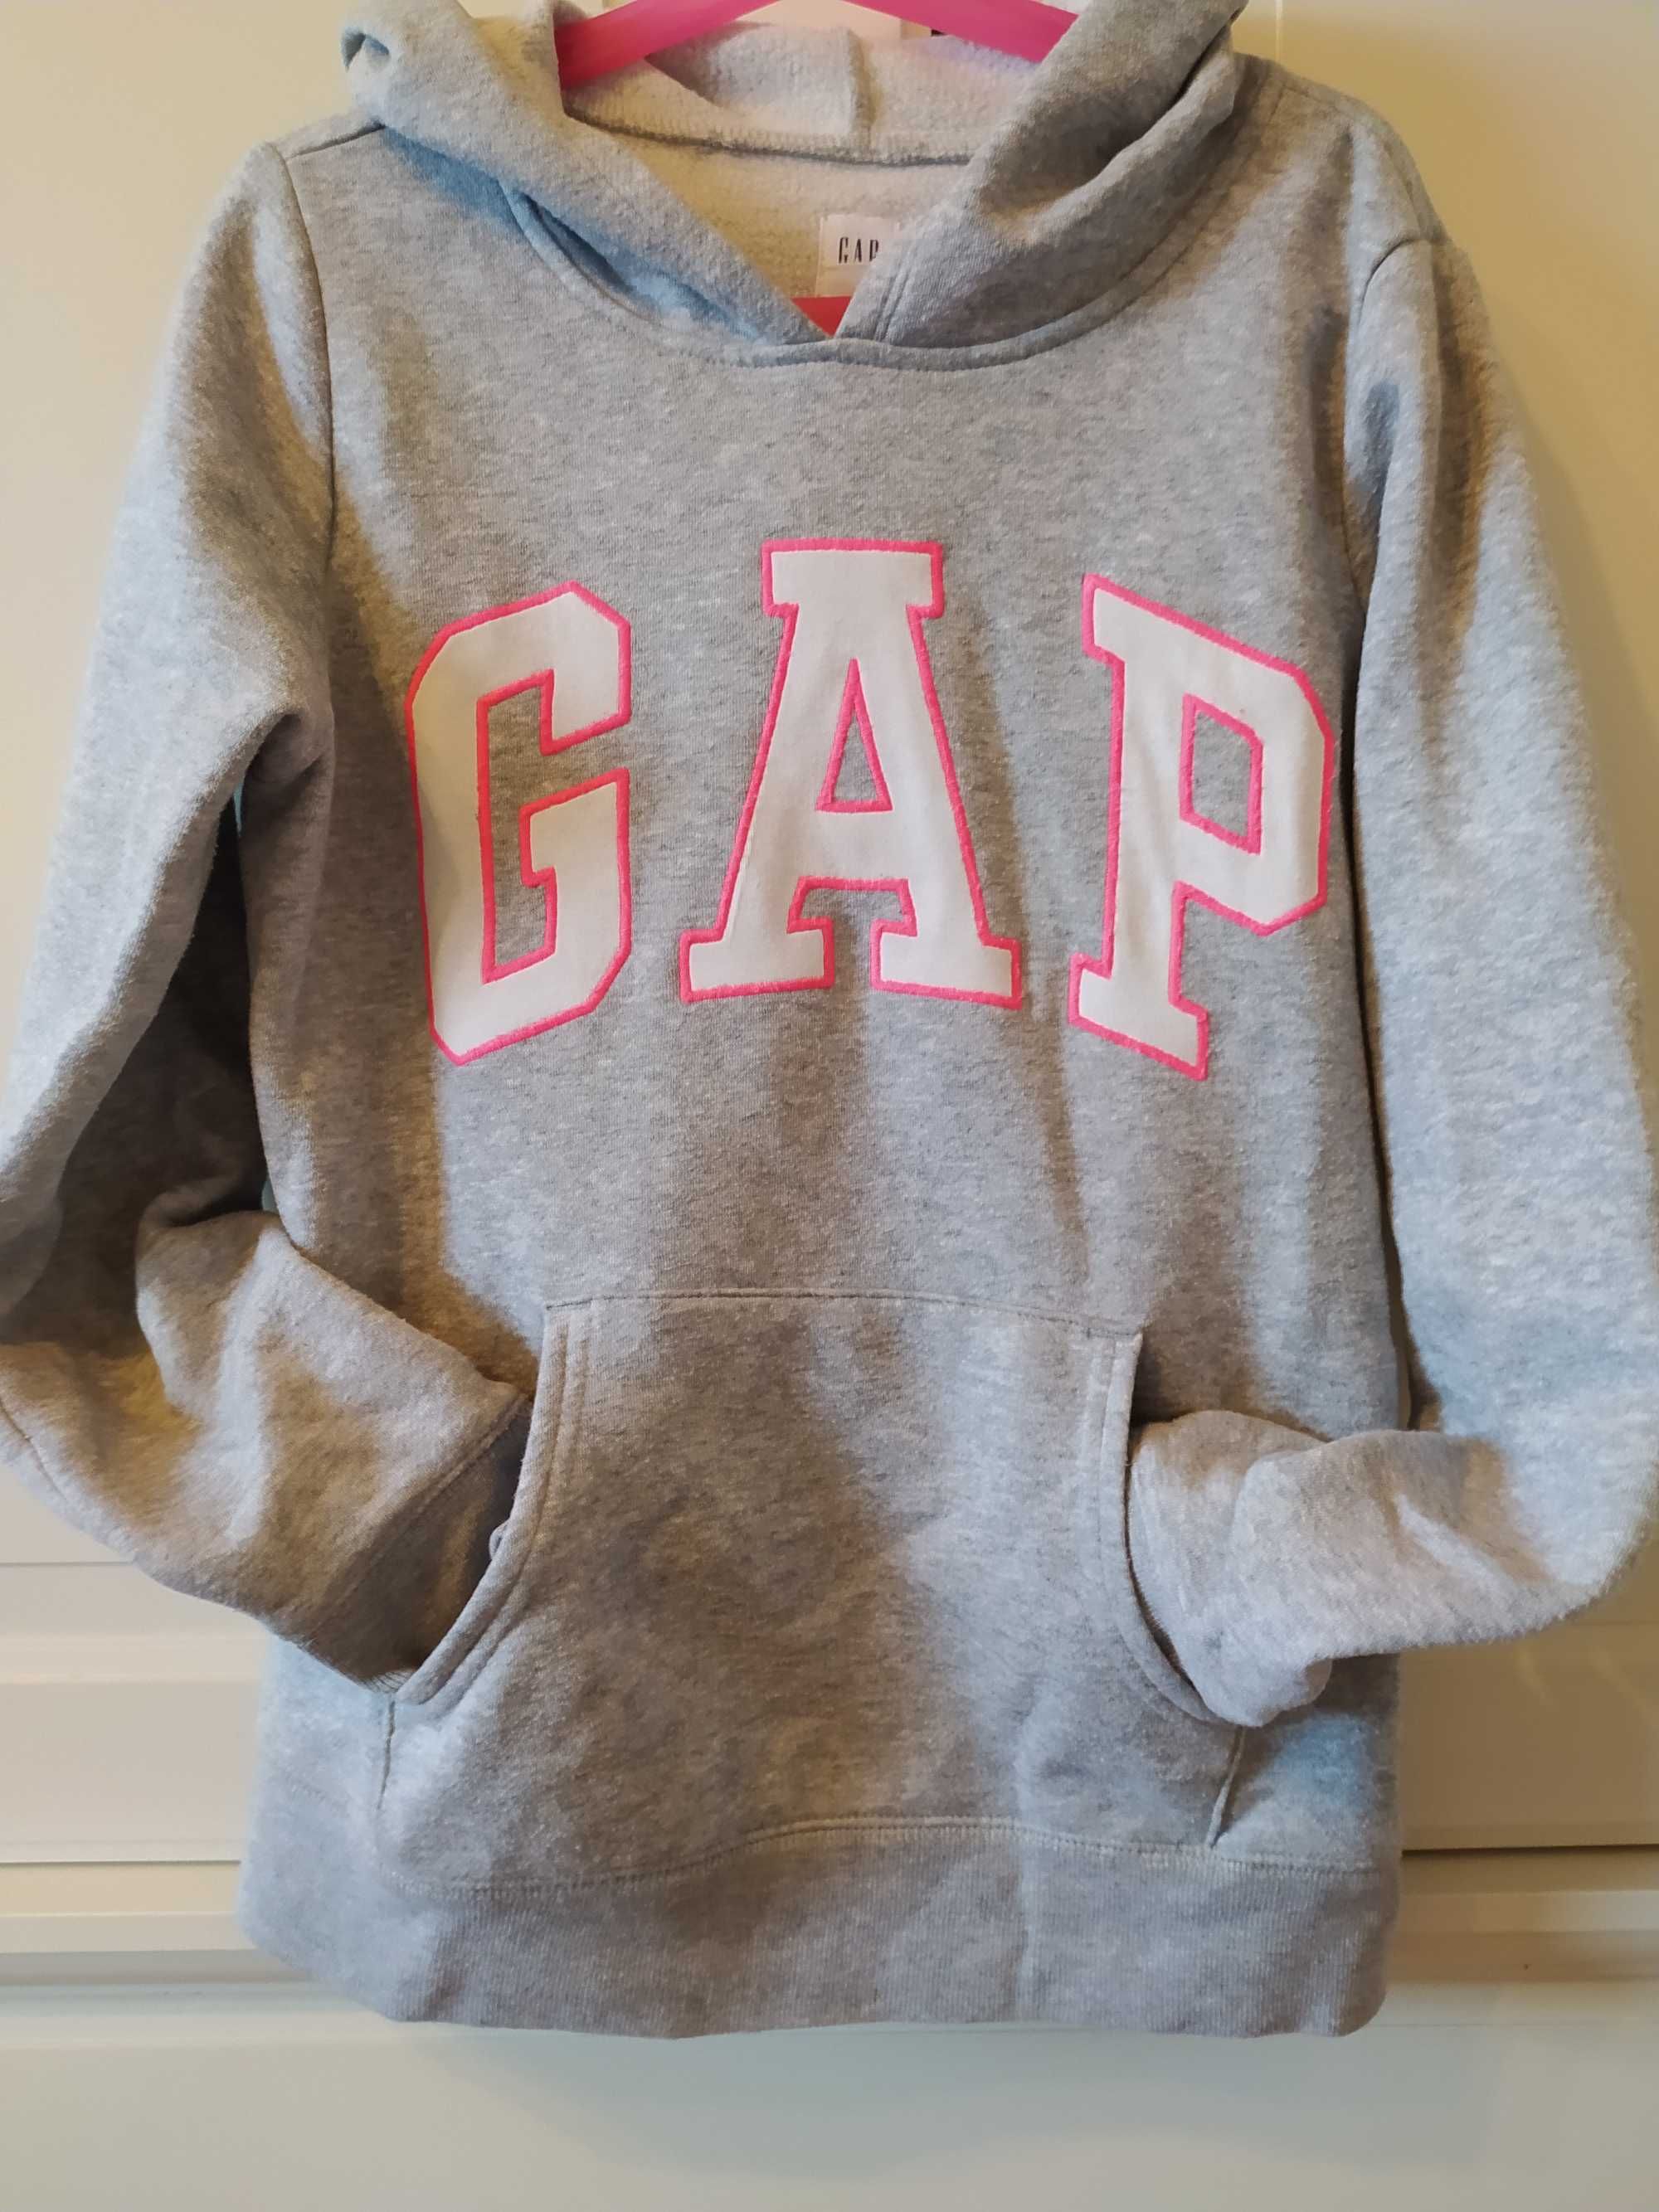 Bluza szara firmy Gap